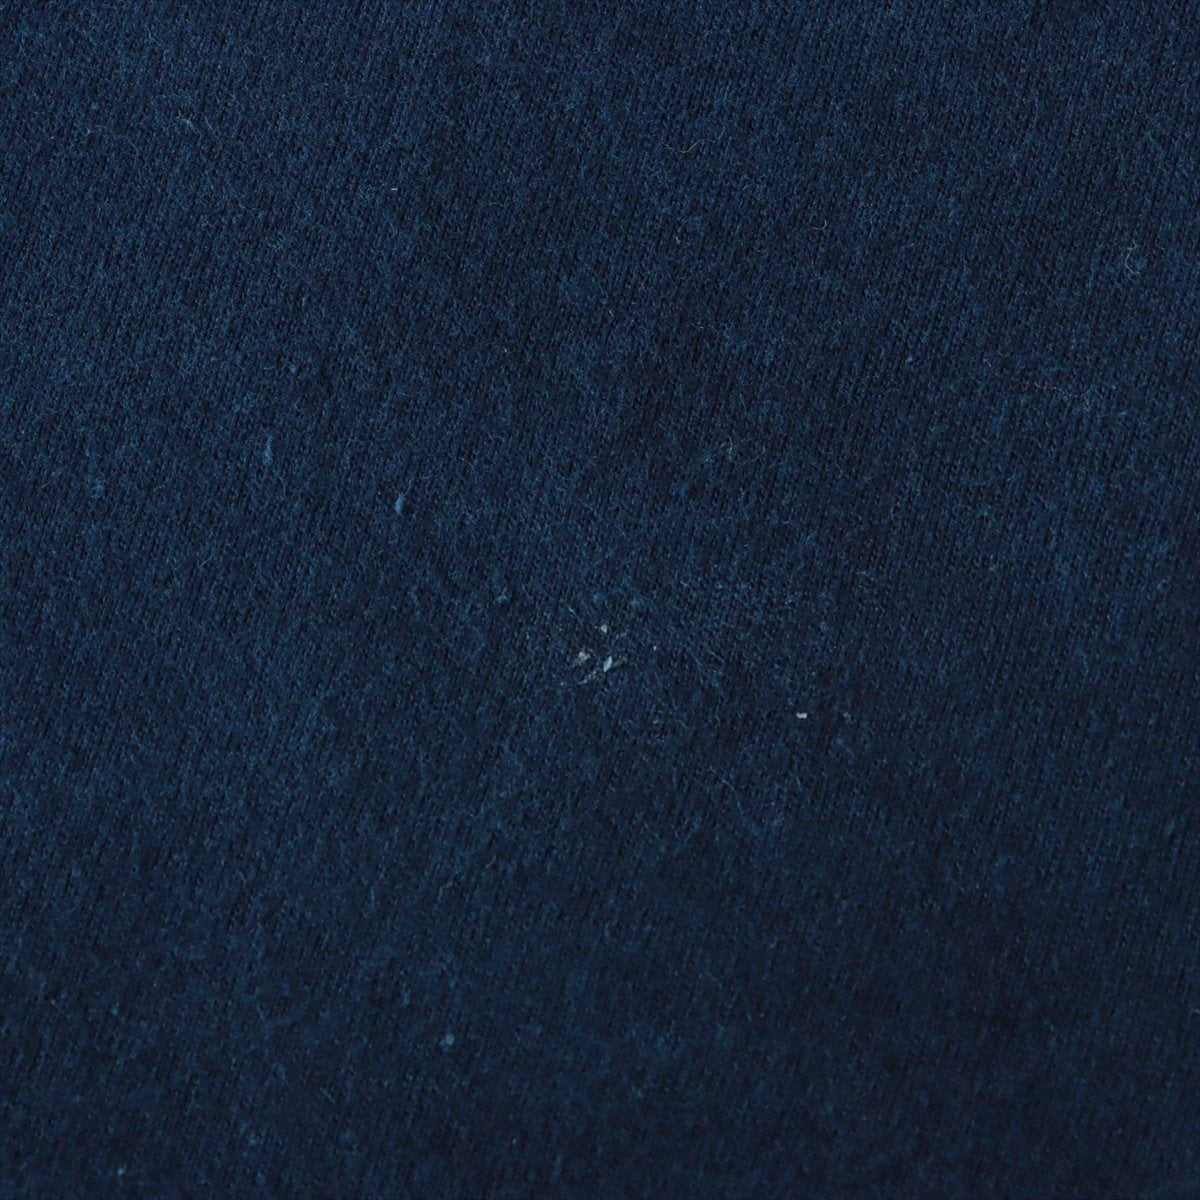 クロムハーツ Tシャツ コットン M インディゴ 藍染め加工 ダイダガープリント